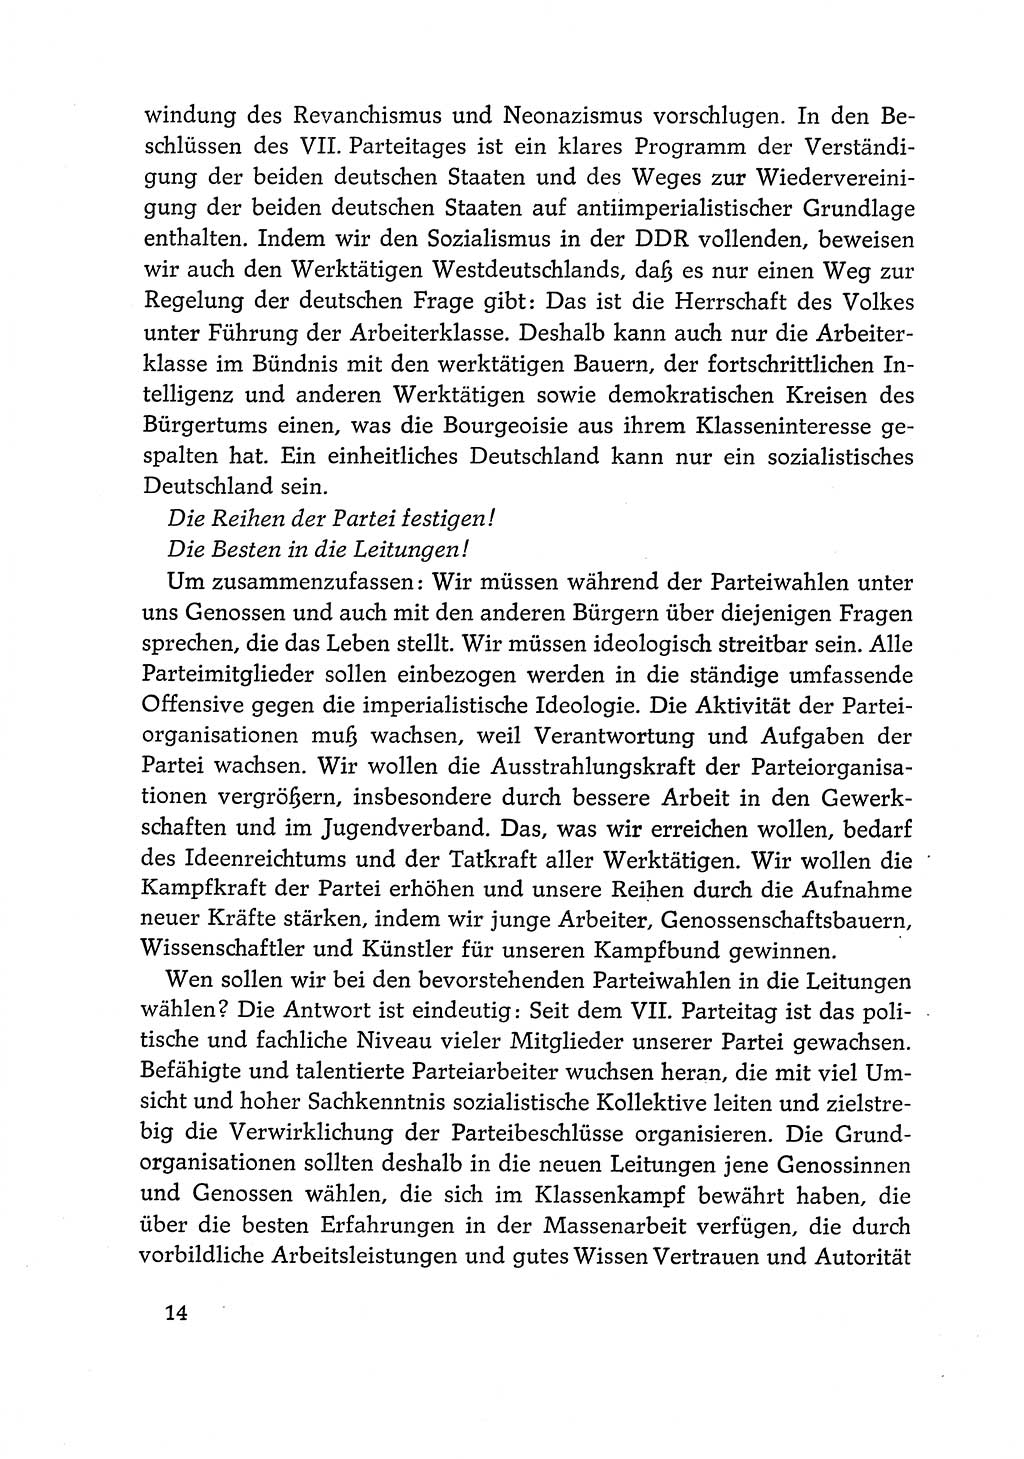 Dokumente der Sozialistischen Einheitspartei Deutschlands (SED) [Deutsche Demokratische Republik (DDR)] 1968-1969, Seite 14 (Dok. SED DDR 1968-1969, S. 14)